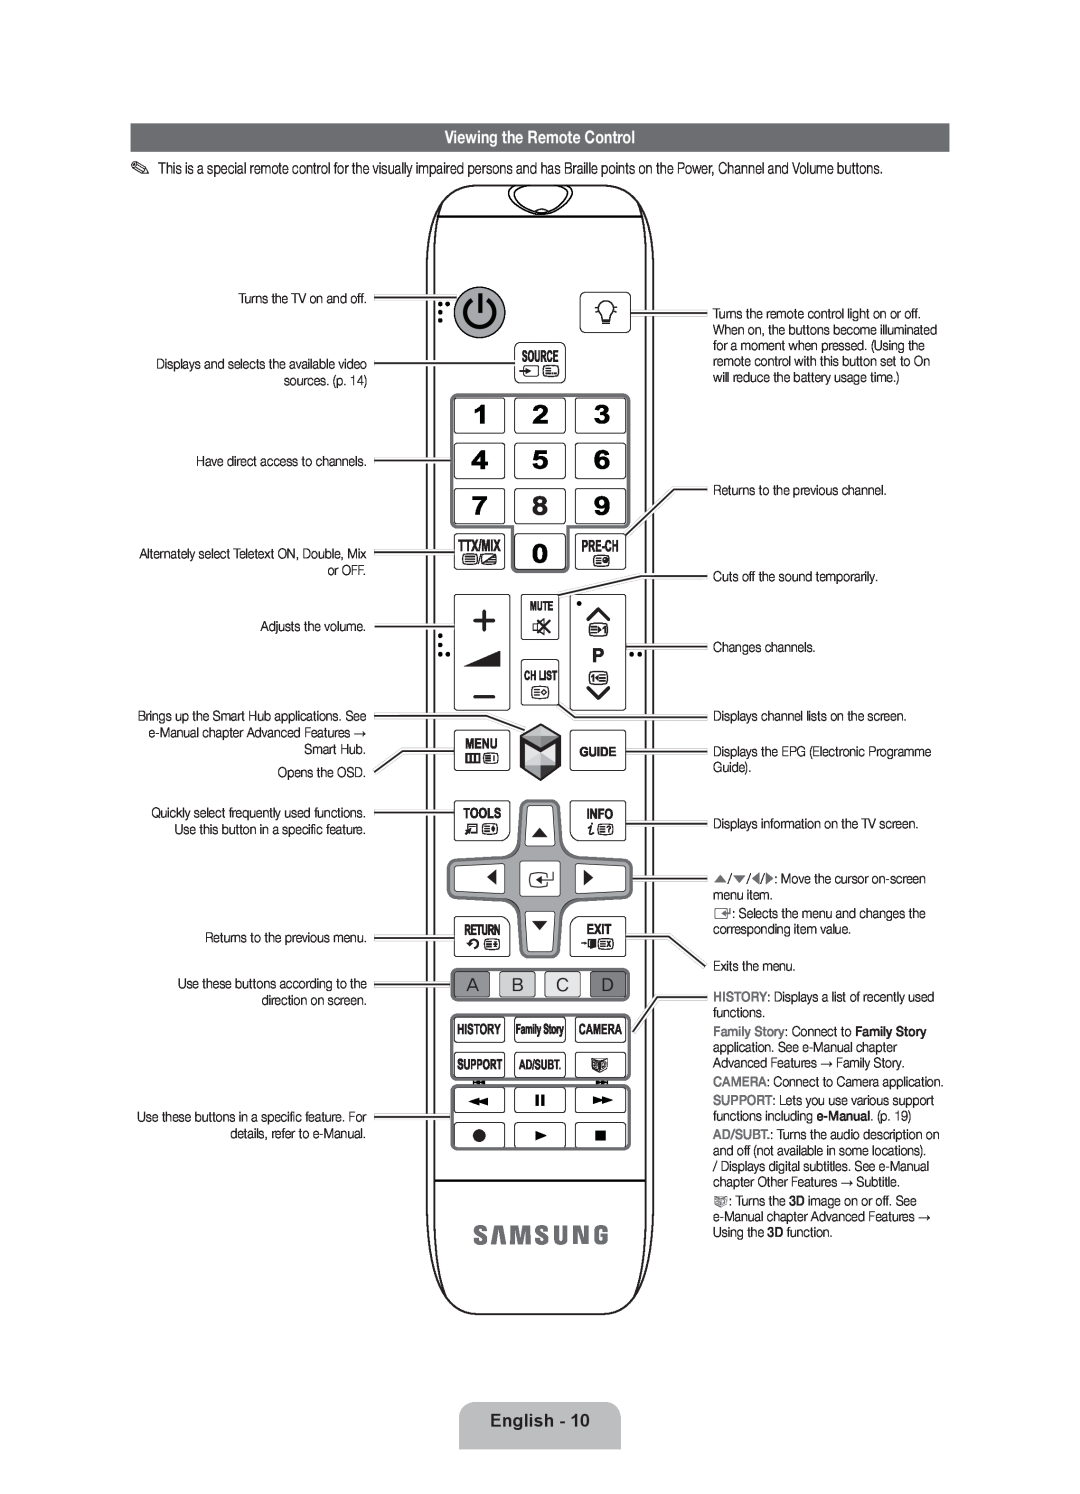 Samsung UE40ES7000SXXN, UE46D7090LSXZG, UE46ES7000SXXC manual Viewing the Remote Control, English, Camera, History, Ad/Subt 